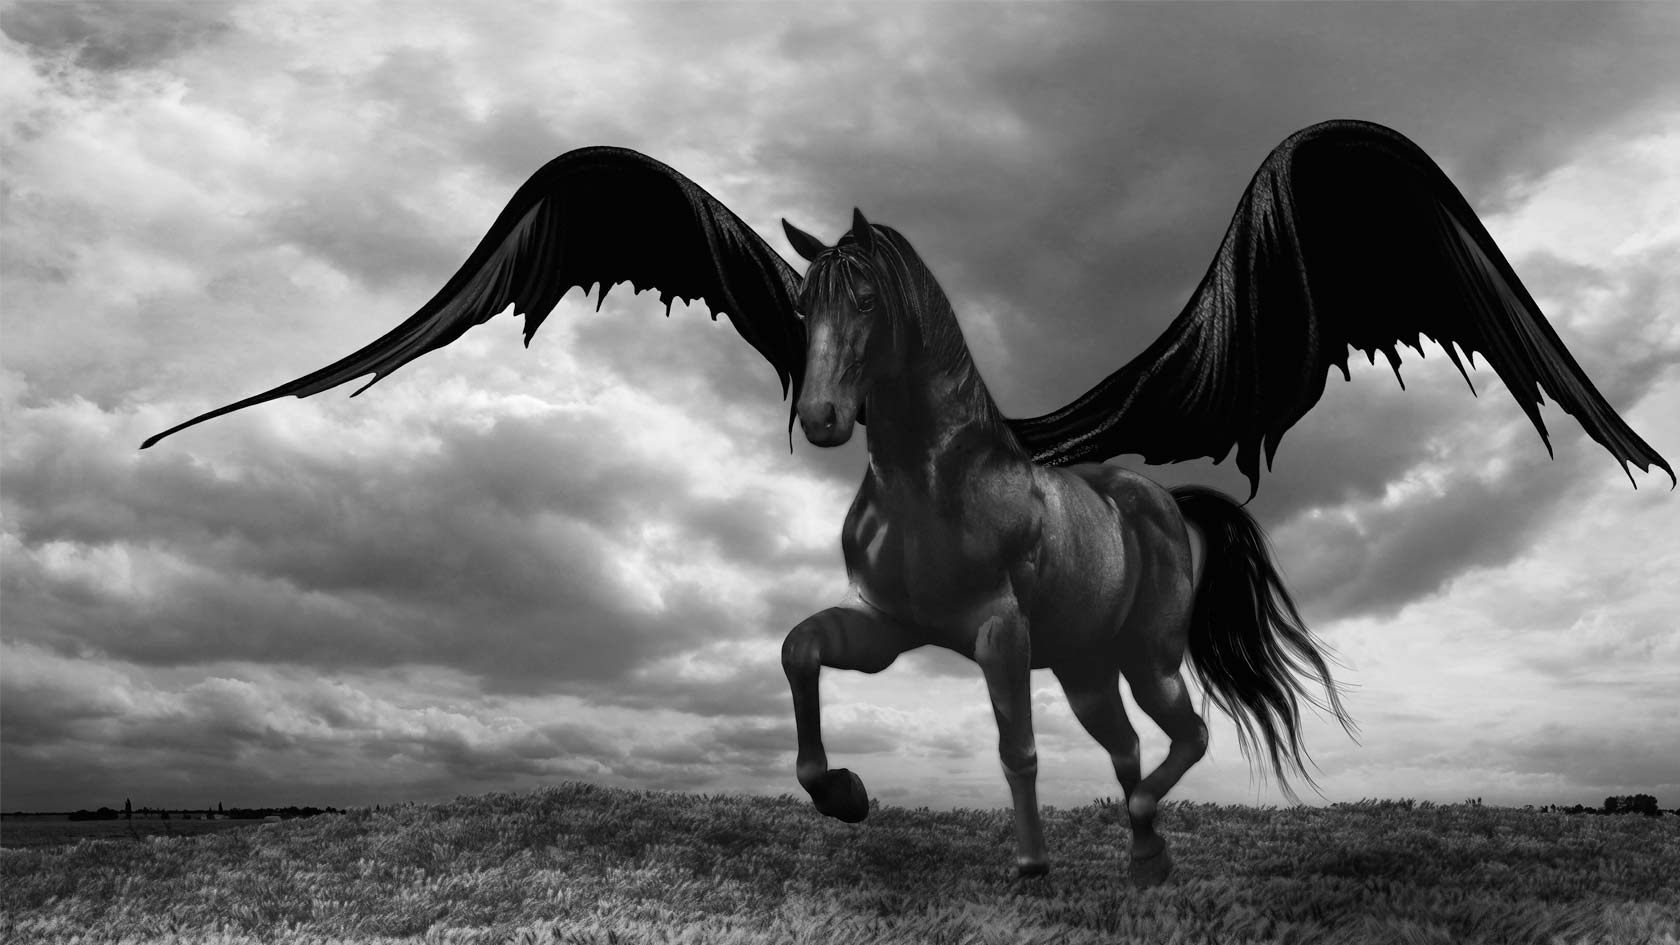 Svartvit, dyster bild av den flygande hästen Pegasus.